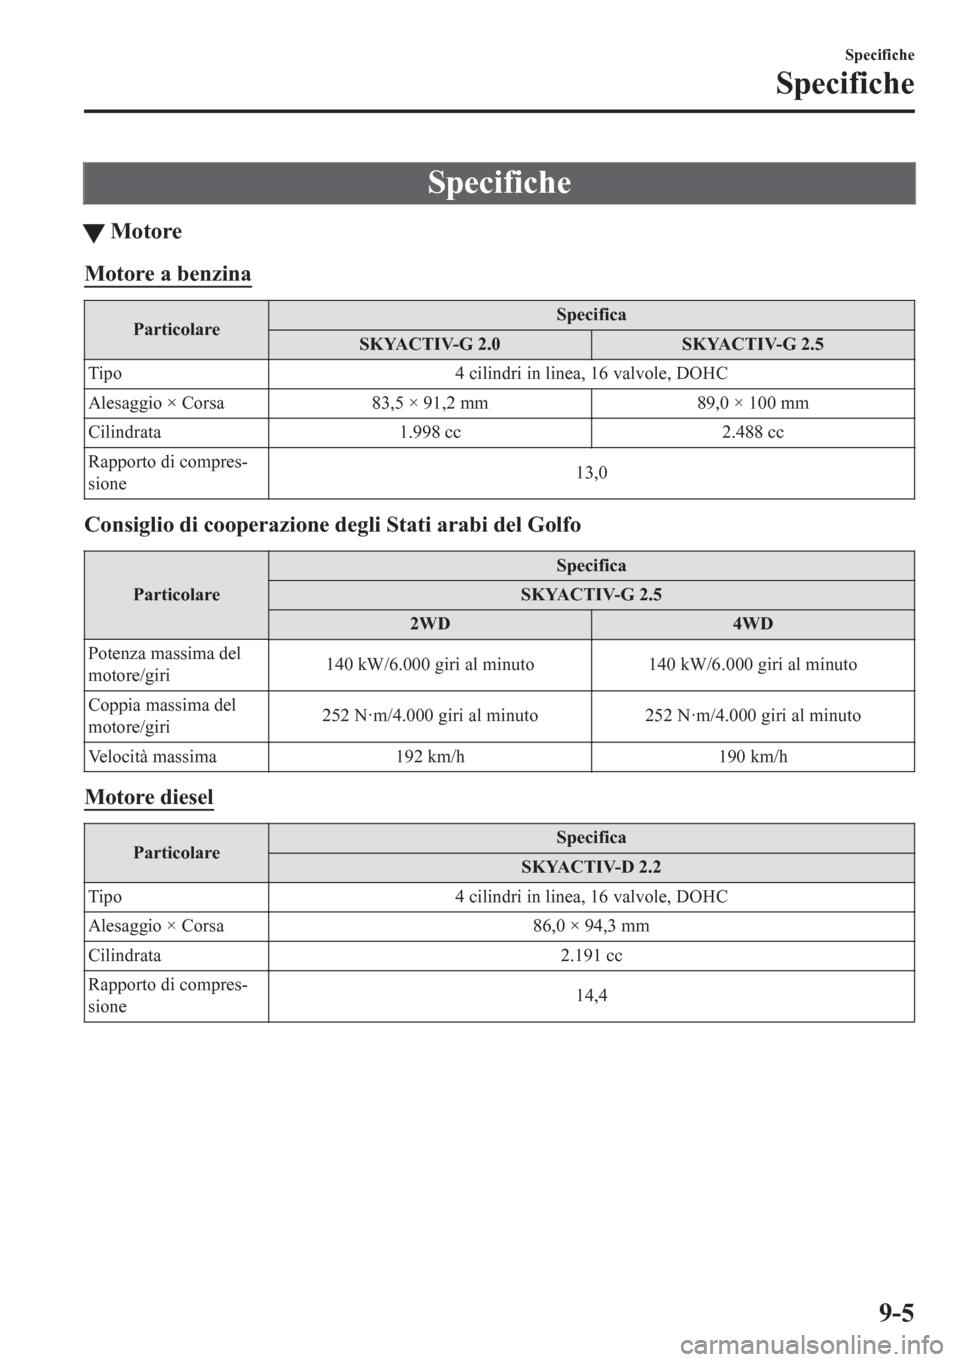 MAZDA MODEL CX-5 2018  Manuale del proprietario (in Italian) Specifiche
tMotore
Motore a benzina
ParticolareSpecifica
SKYACTIV-G 2.0 SKYACTIV-G 2.5
Tipo 4 cilindri in linea, 16 valvole, DOHC
Alesaggio × Corsa 83,5 × 91,2 mm 89,0 × 100 mm
Cilindrata 1.998 cc 